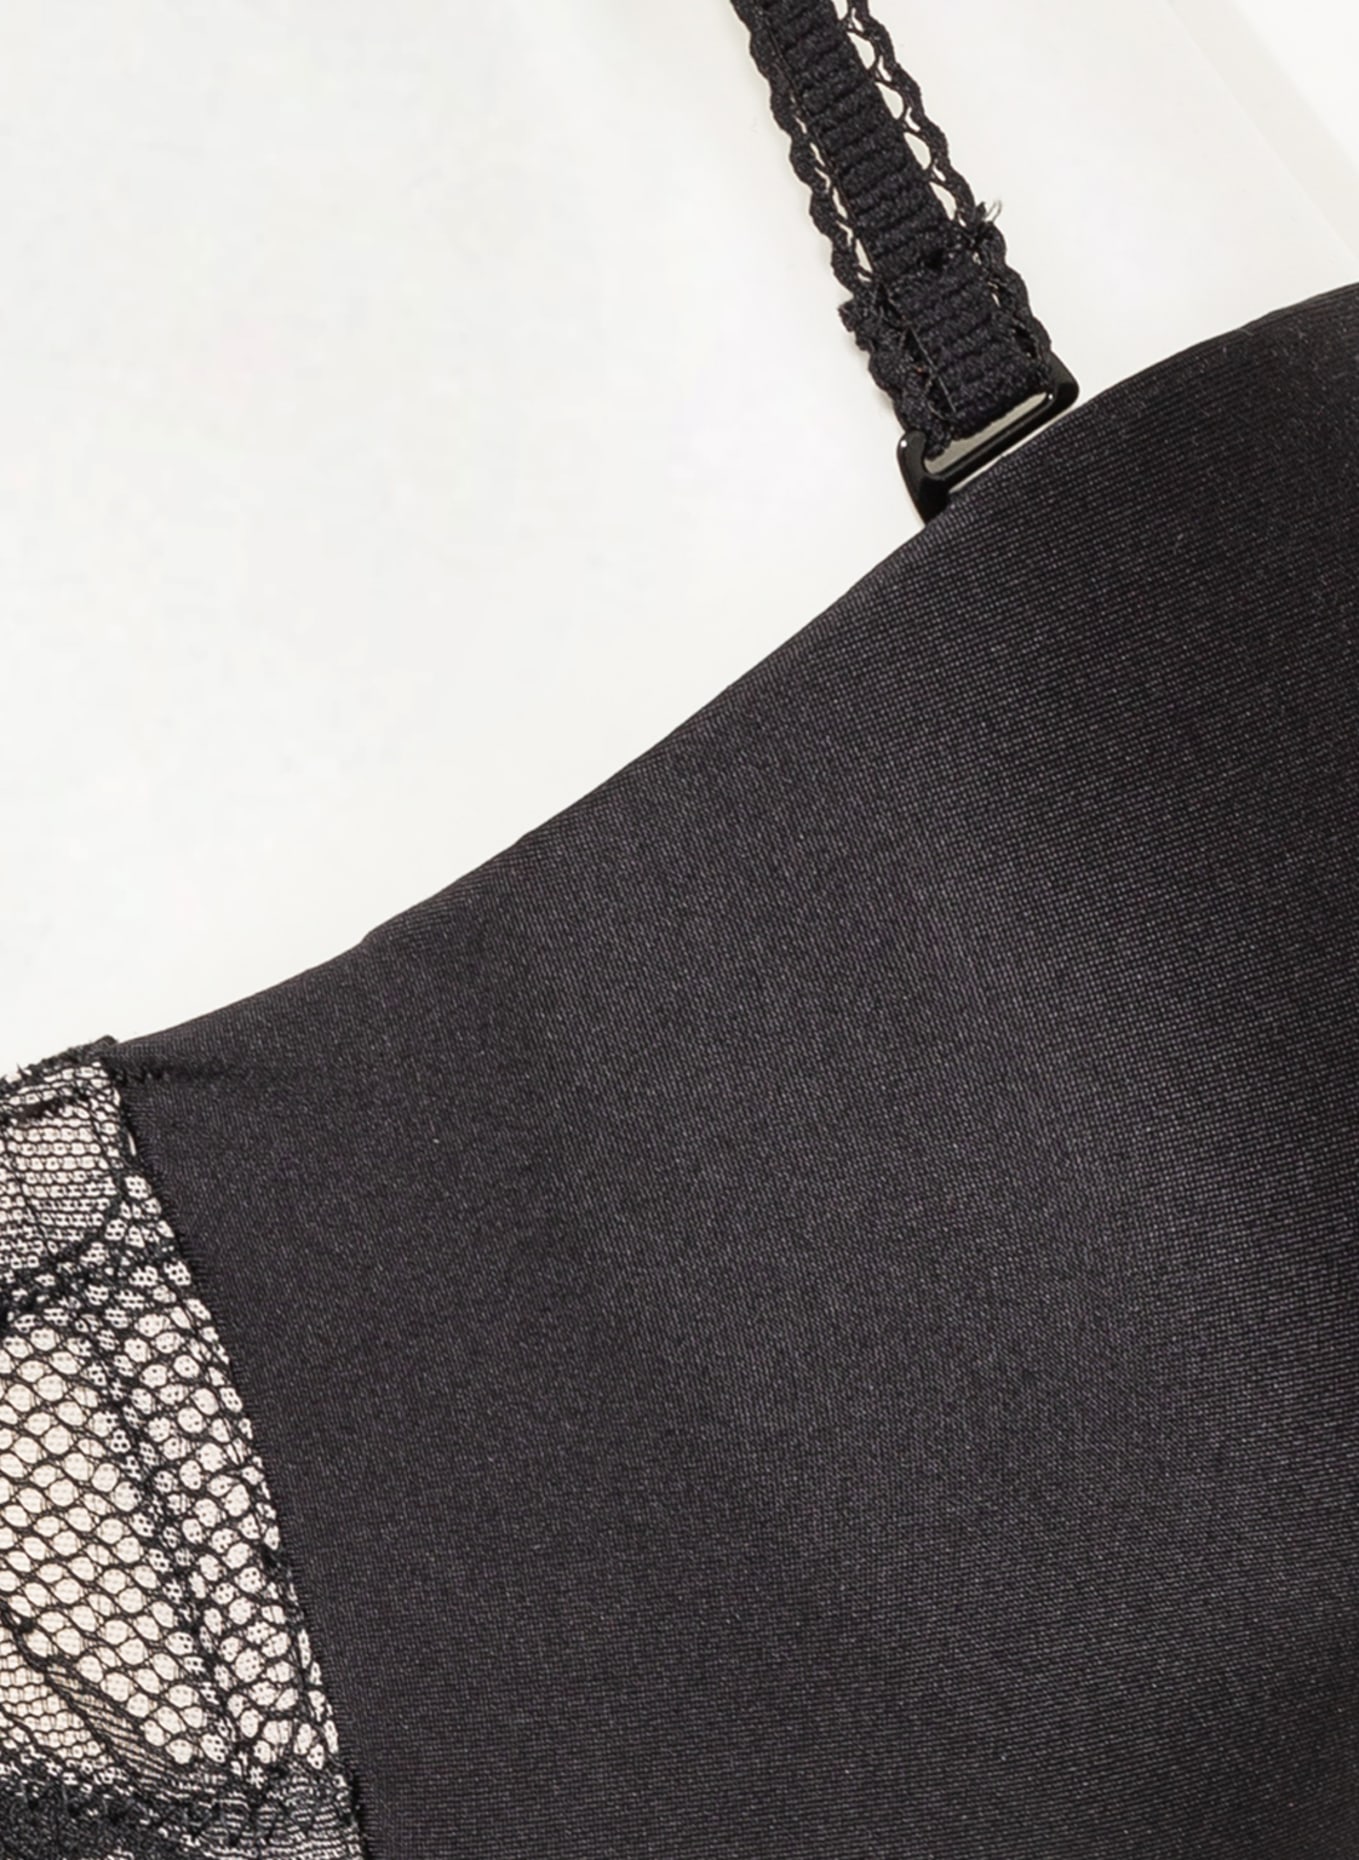 CHANTELLE Multiway bra TRUE LACE, Color: BLACK (Image 6)